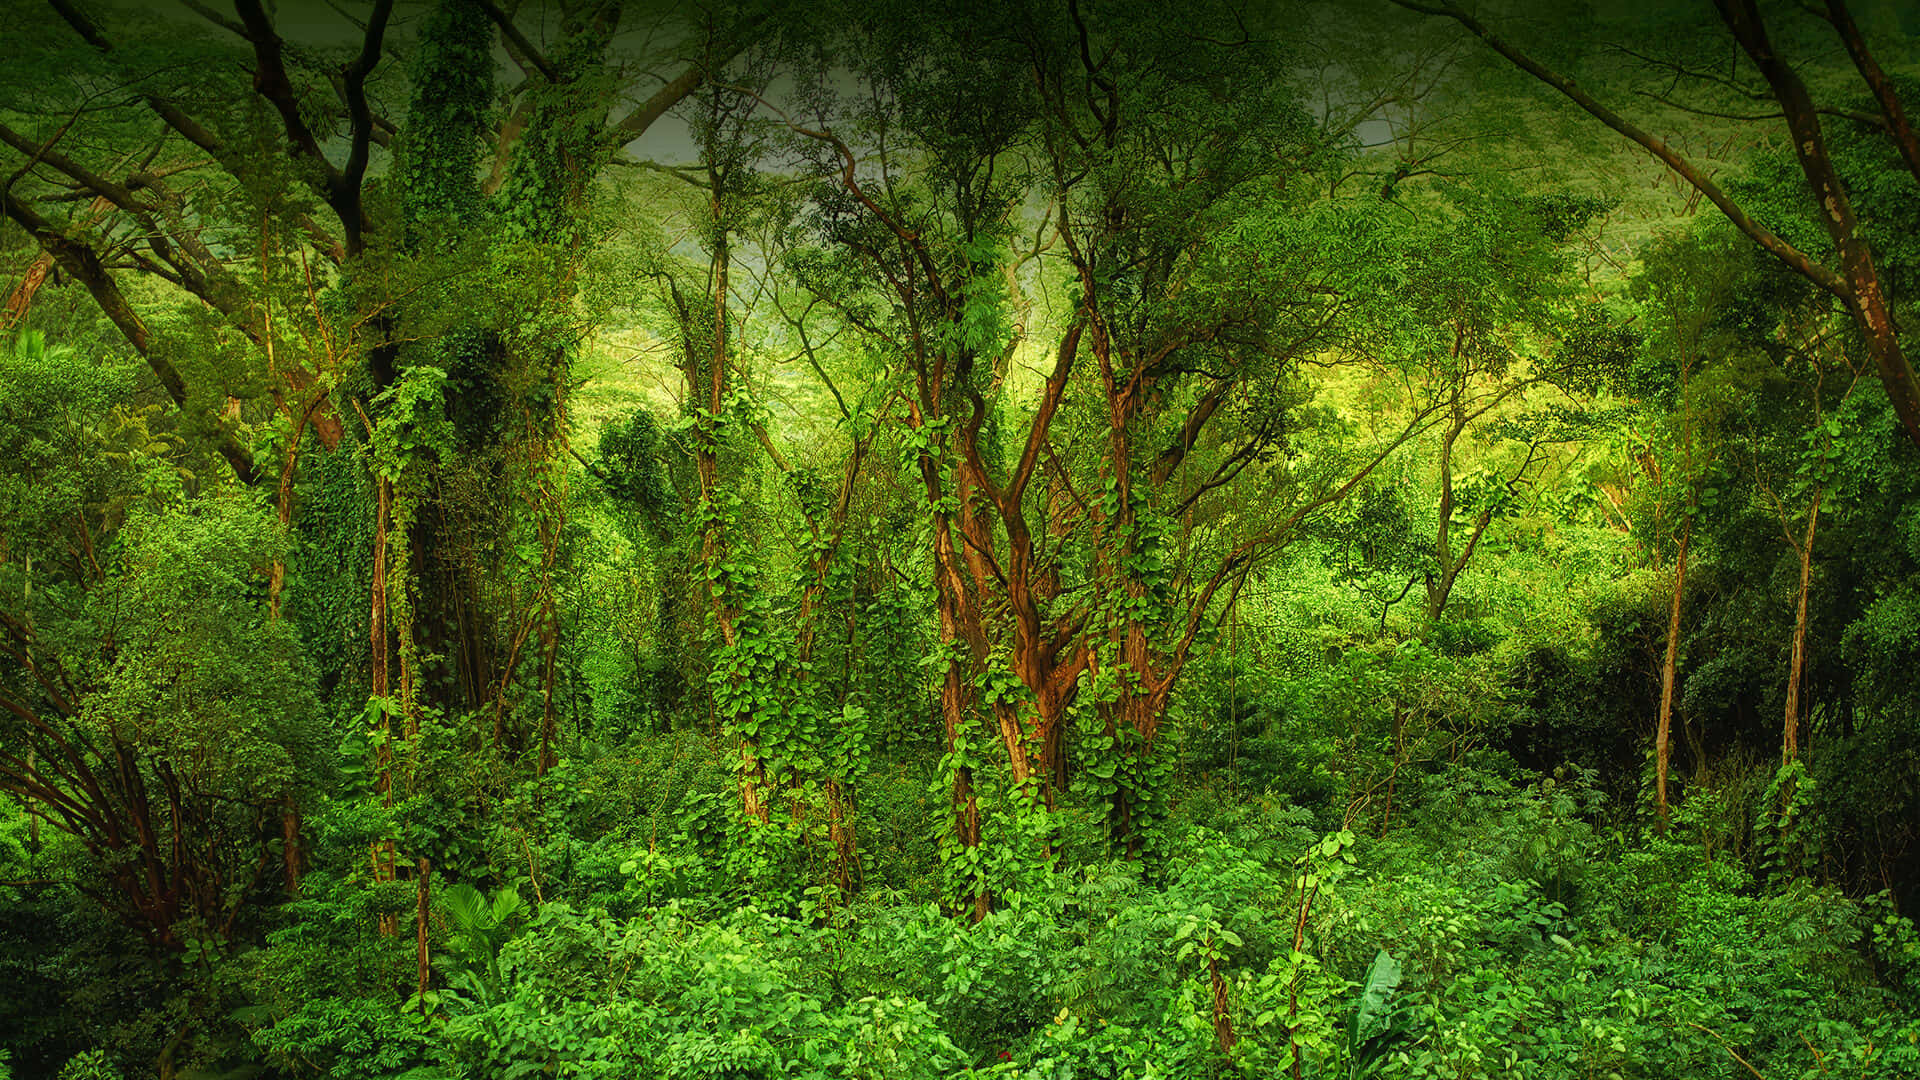 Descubrela Profundidad Y Belleza De La Selva Tropical.